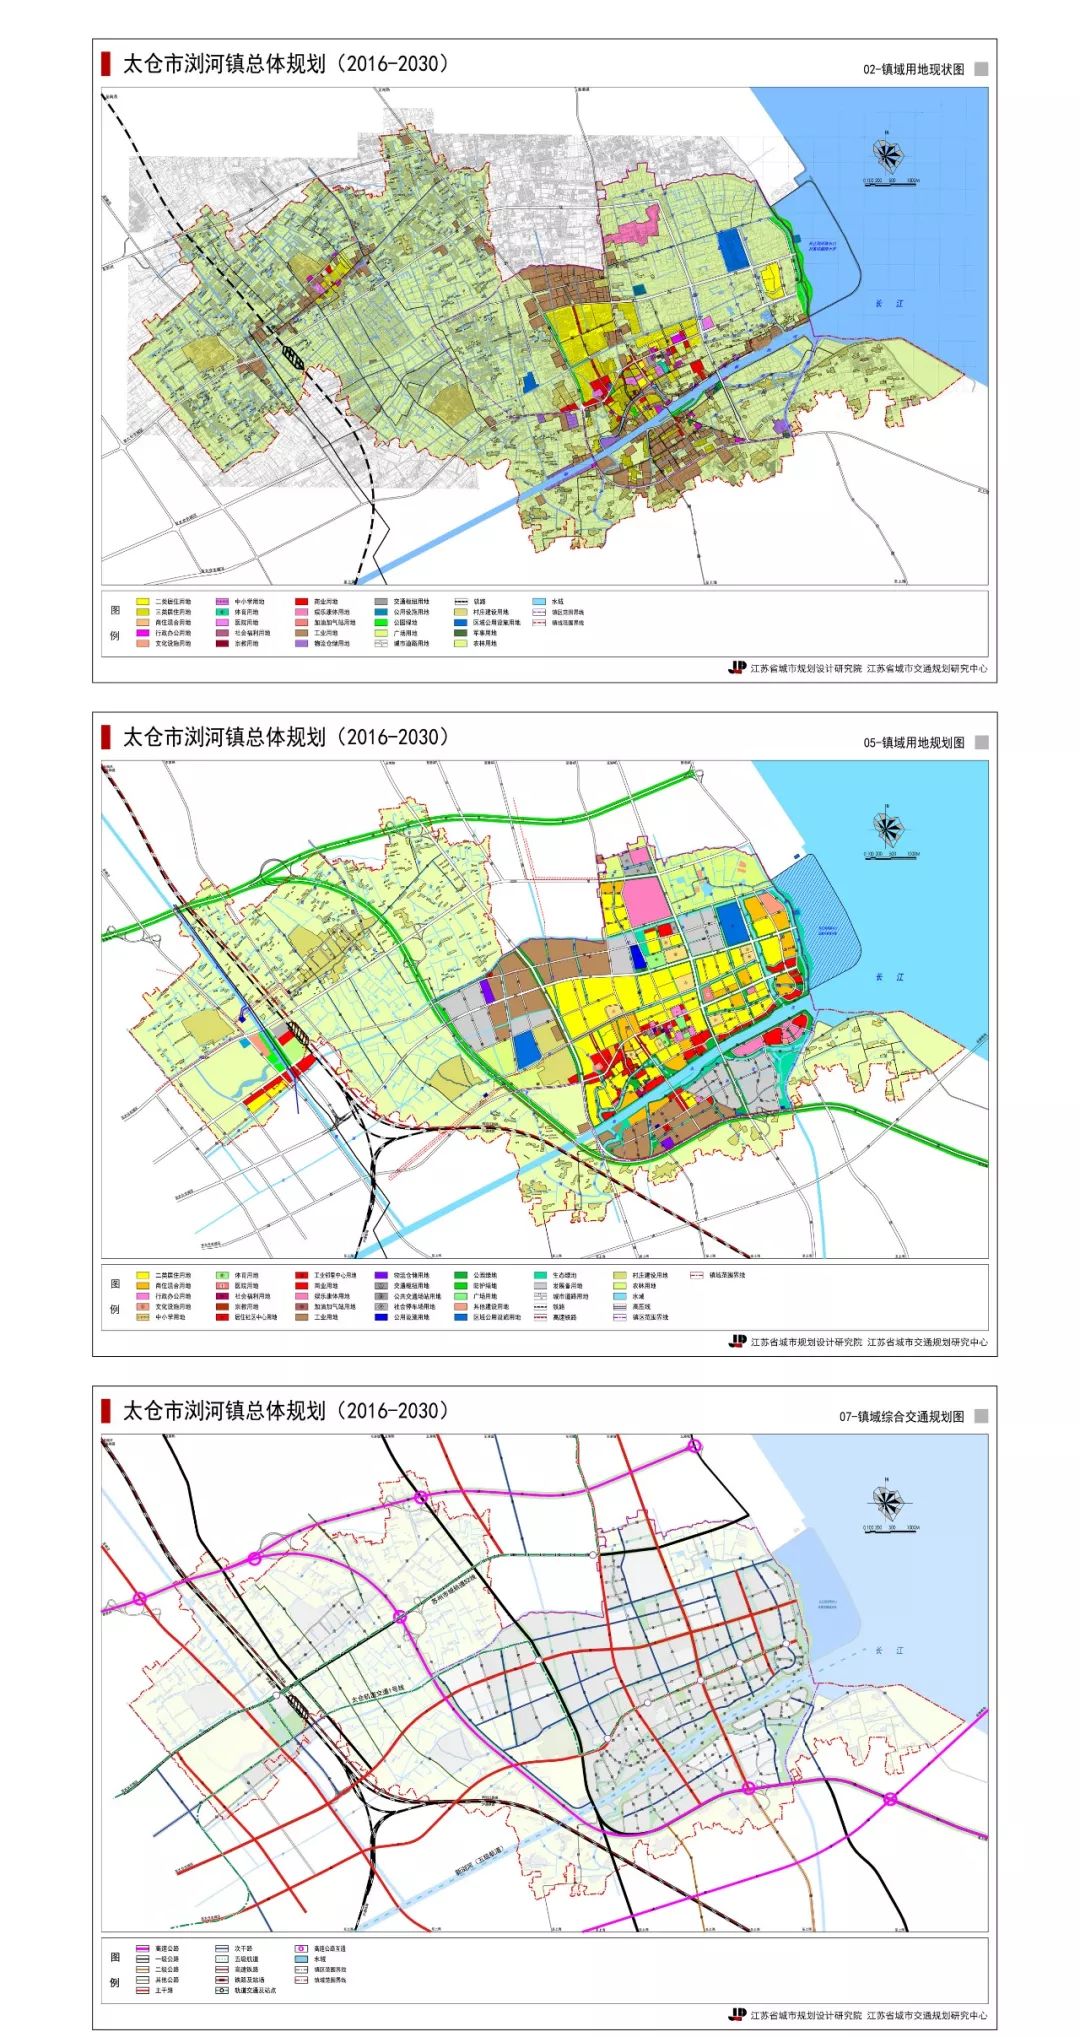 浏河镇总体规划批后公布:重点建设滨江新城